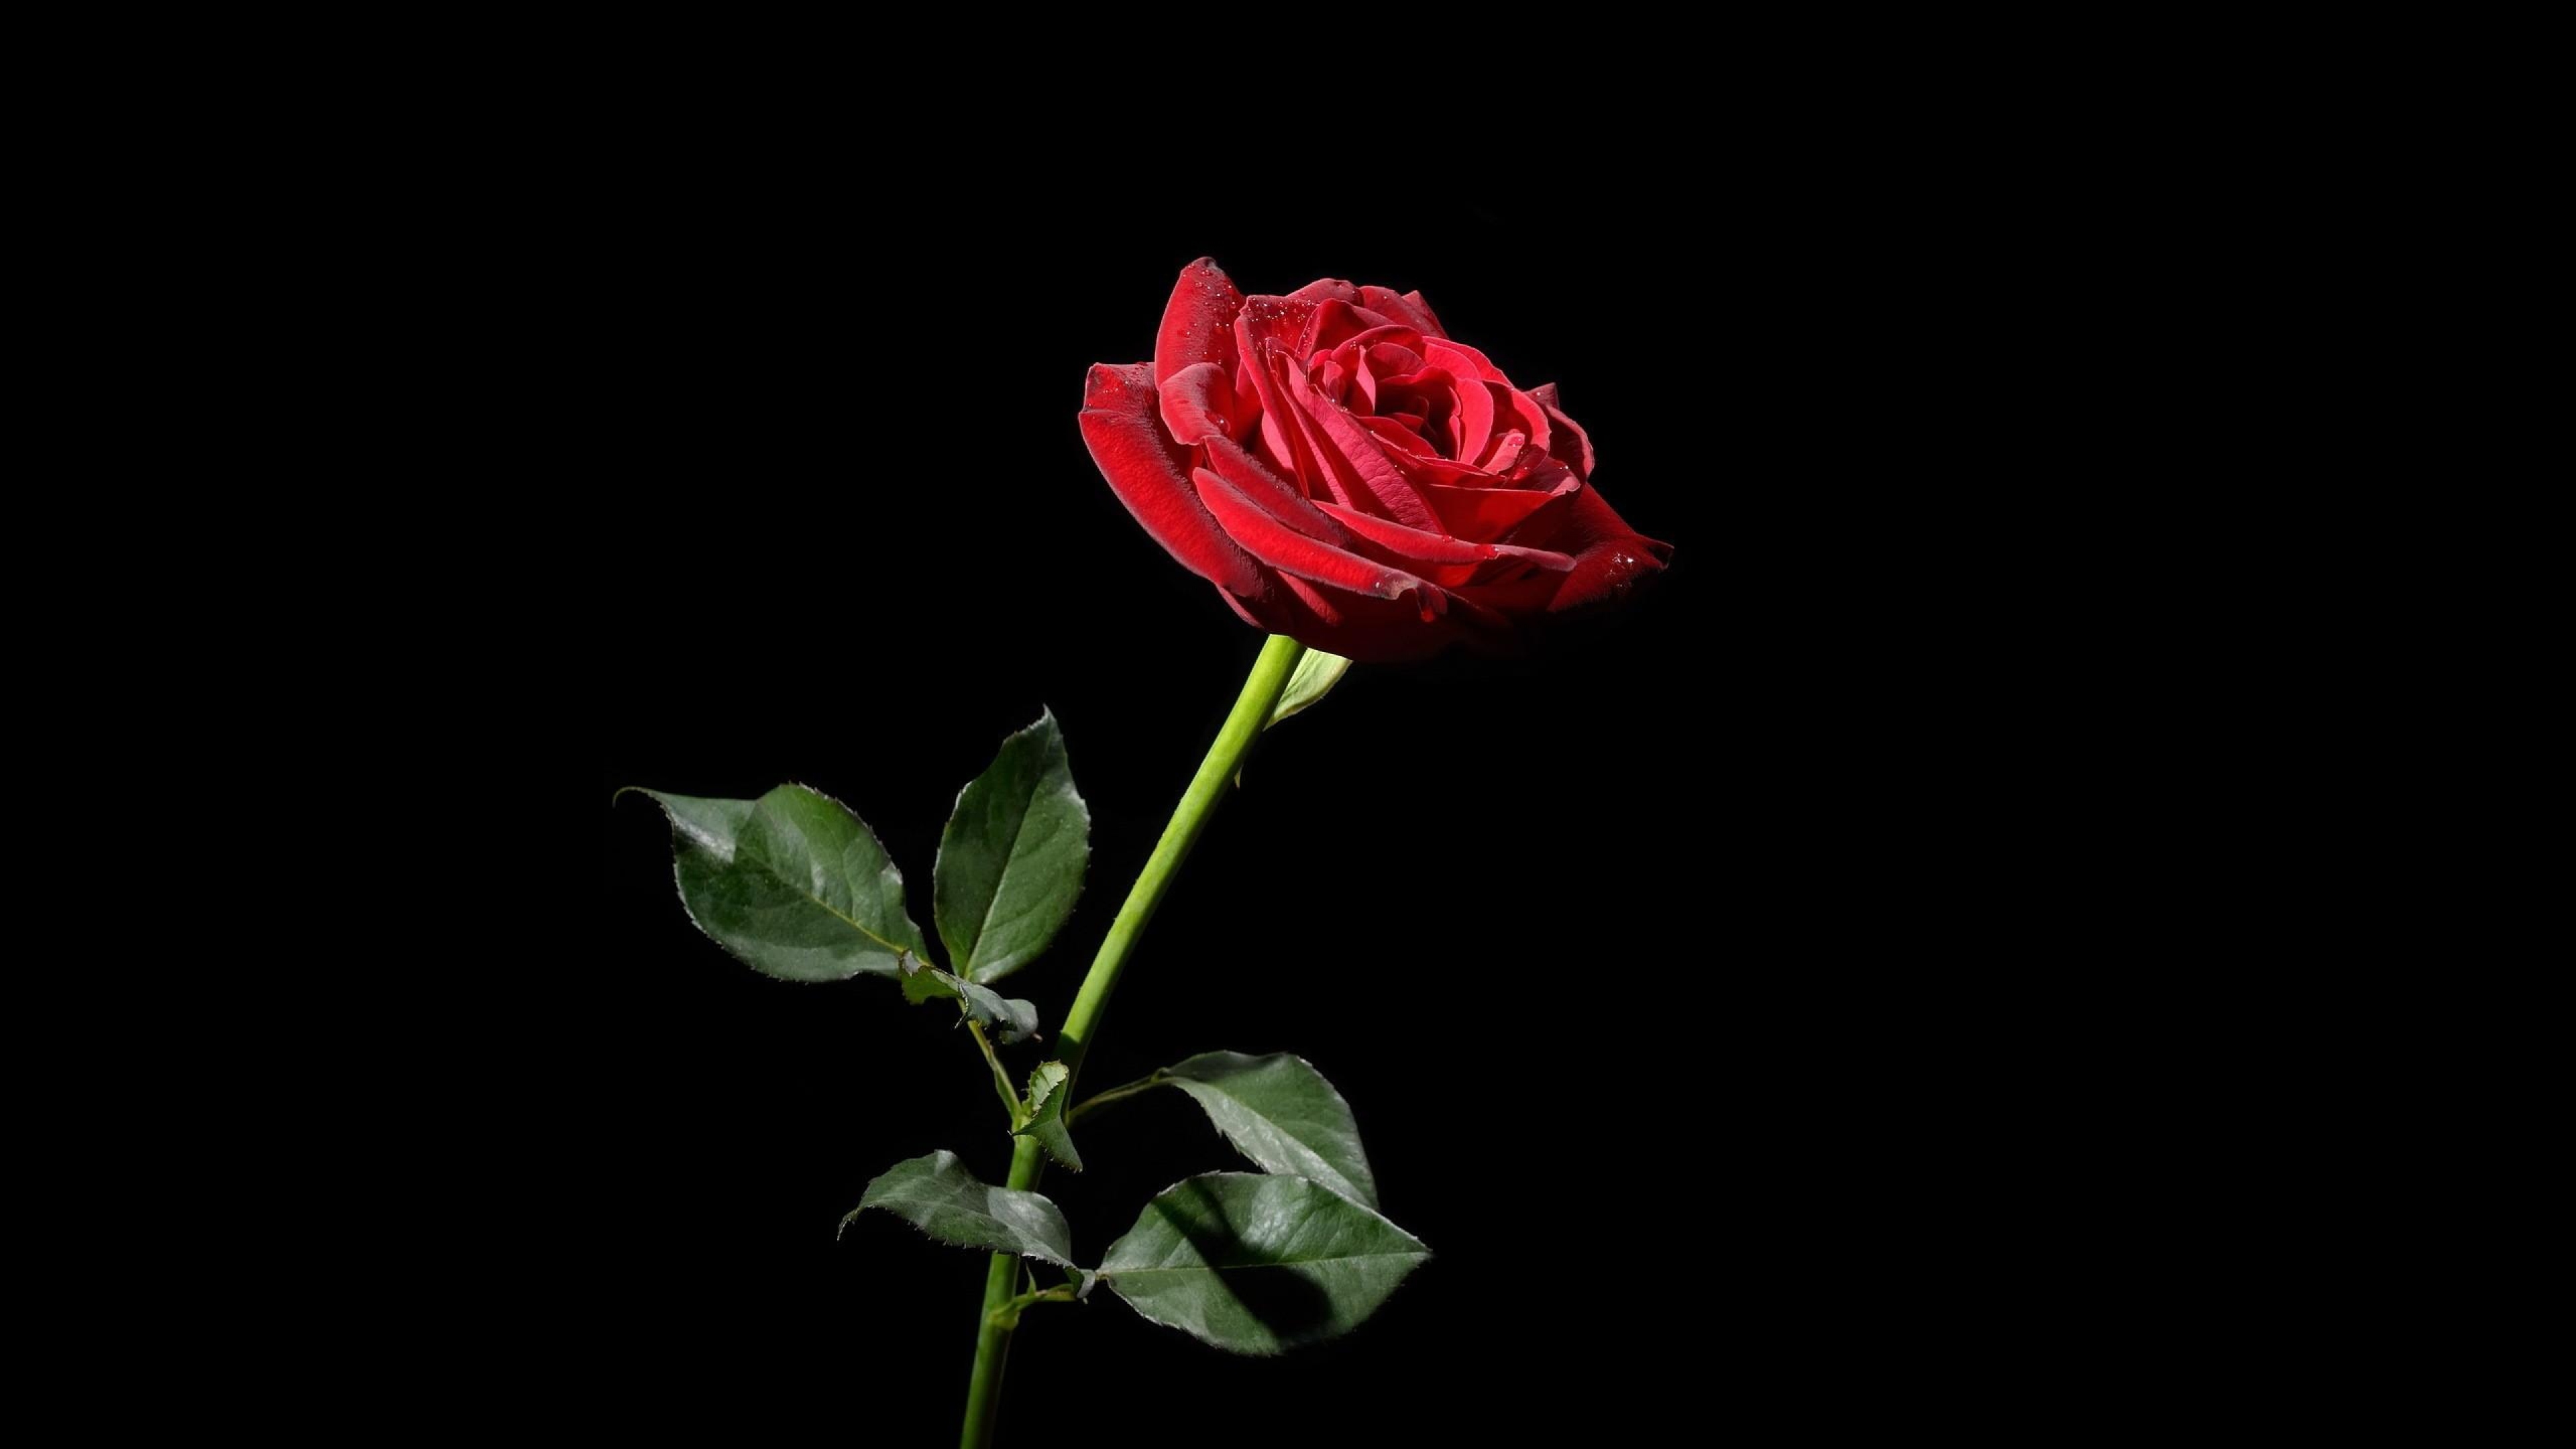 Hình nền hoa màu đỏ có nền đen là sự pha trộn của sự đẹp và sự cổ điển. Tải về ngay để có một phong cách thanh lịch và trang nhã cho thiết bị của bạn.